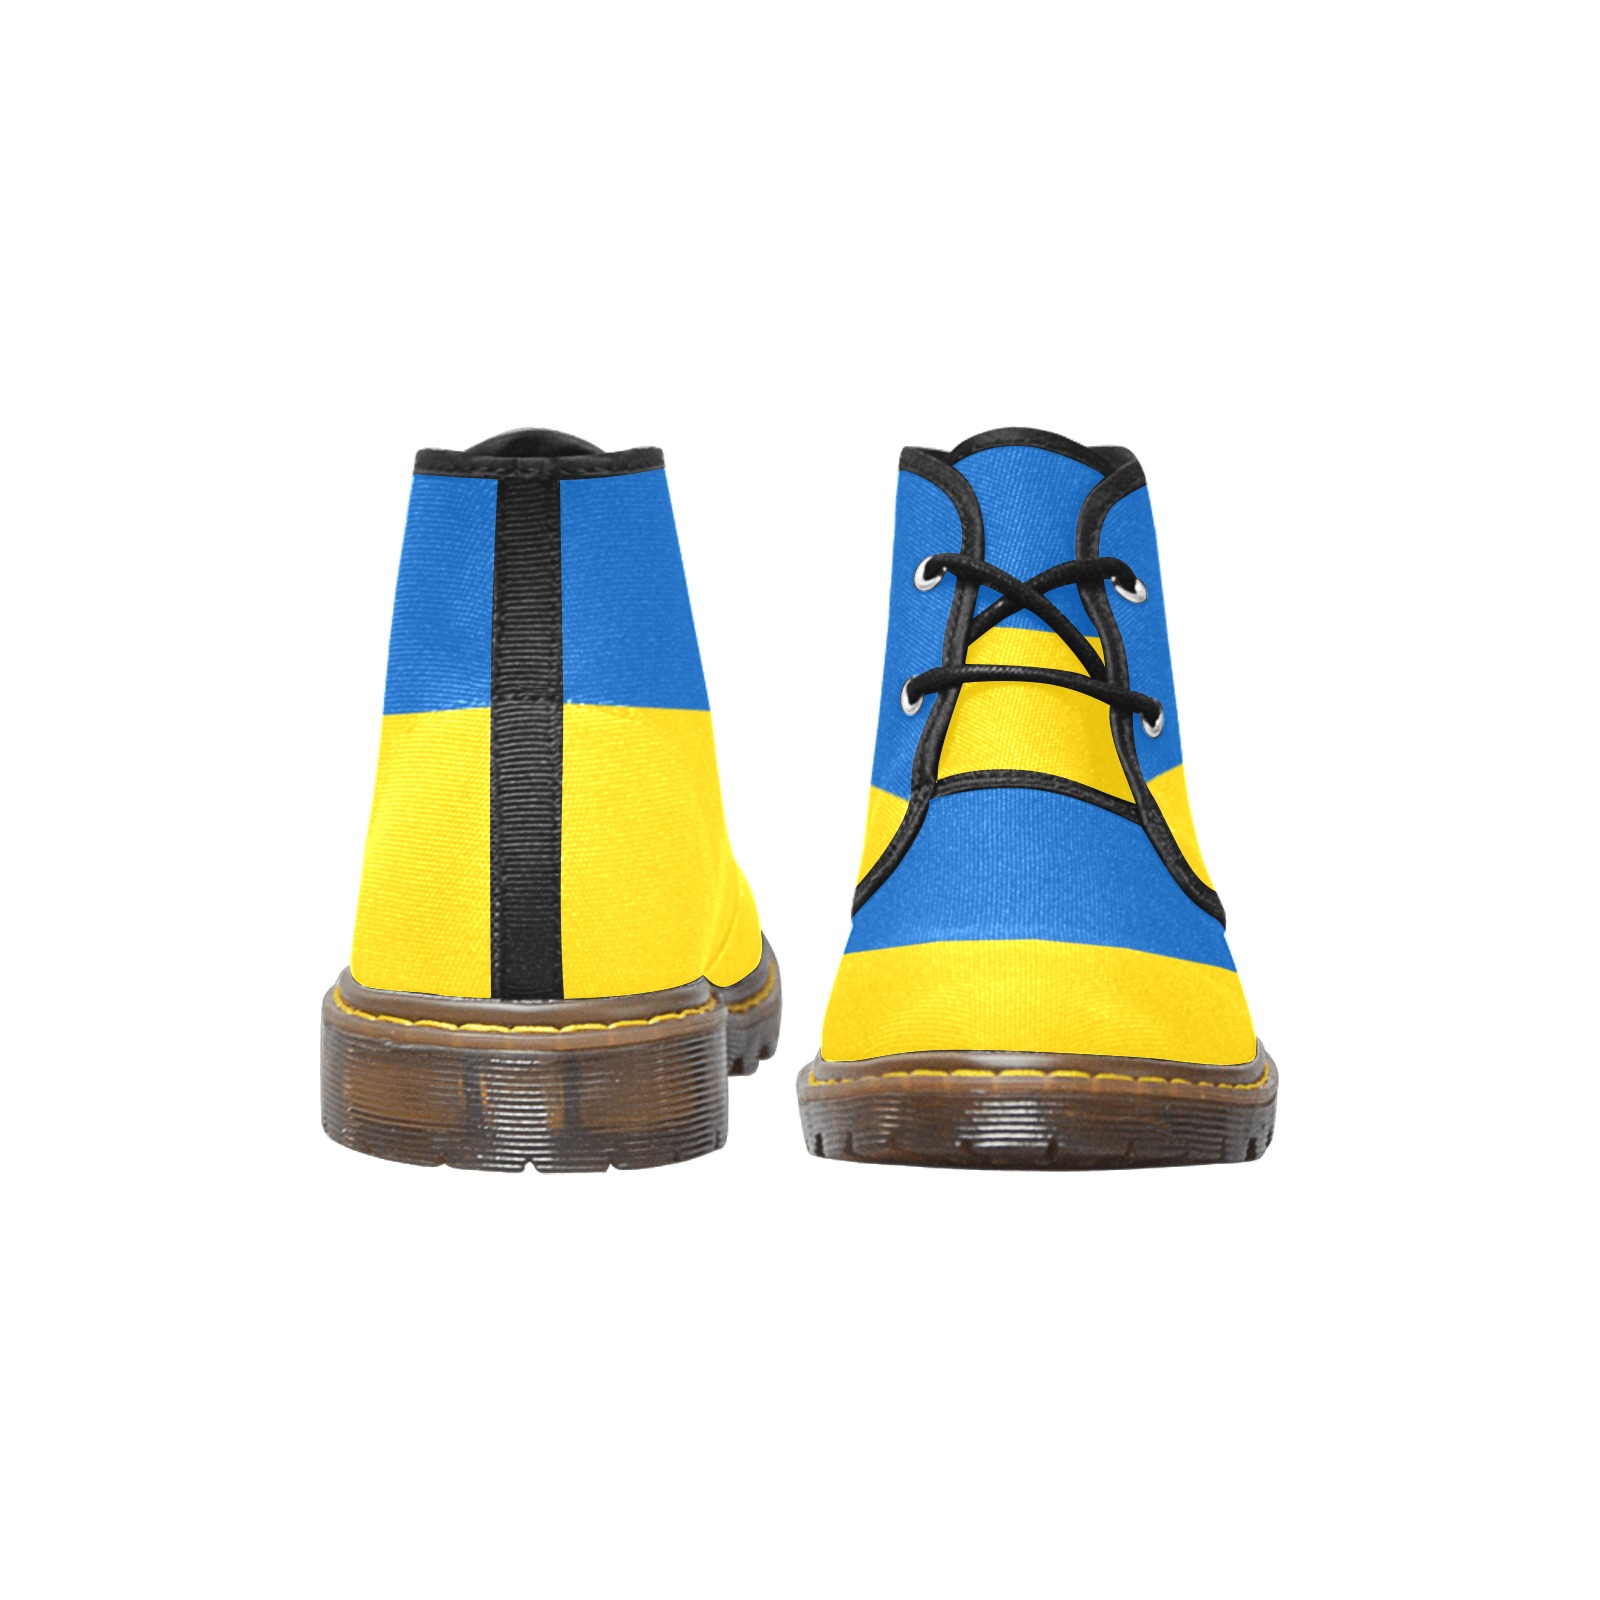 UKRAINE Men's Canvas Chukka Boots (Model 2402-1)